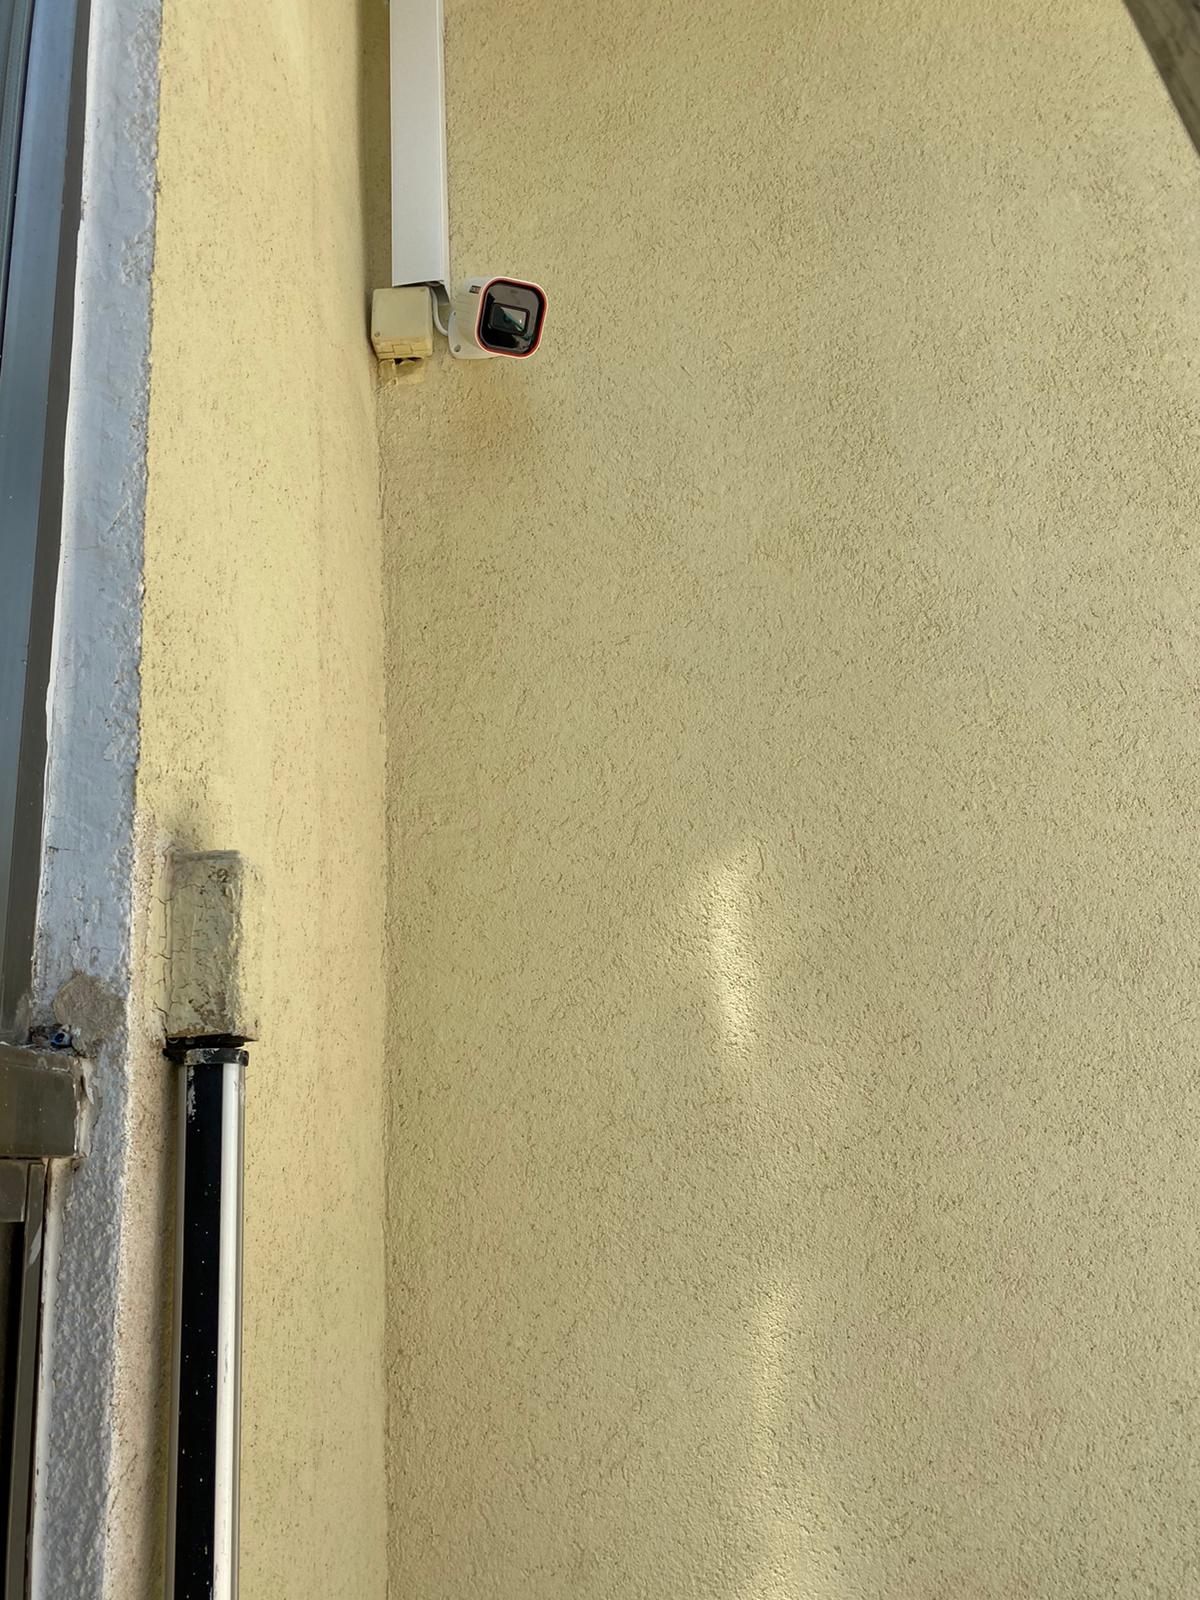 התקנת מצלמות אבטחה בבית פרטי בדניה חיפה